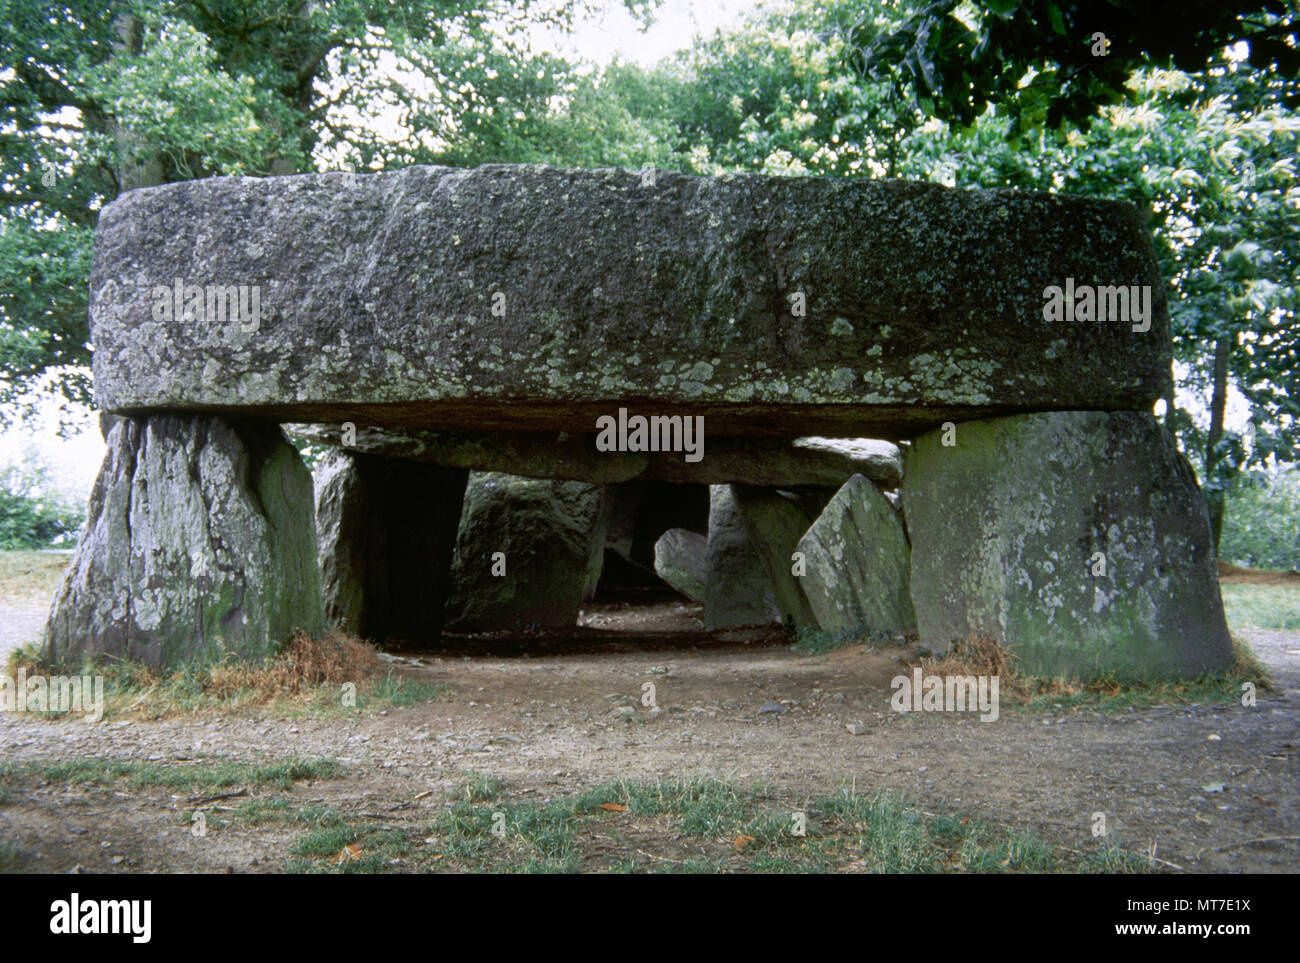 France, Brittany. Essé. La Roche-aux-Fees (The Faireis' Rock). Neolithic passage grave. Departament of Ille-et-Vilaine. Covered passage of stone blocks. 3000- 2500 BC. Stock Photo